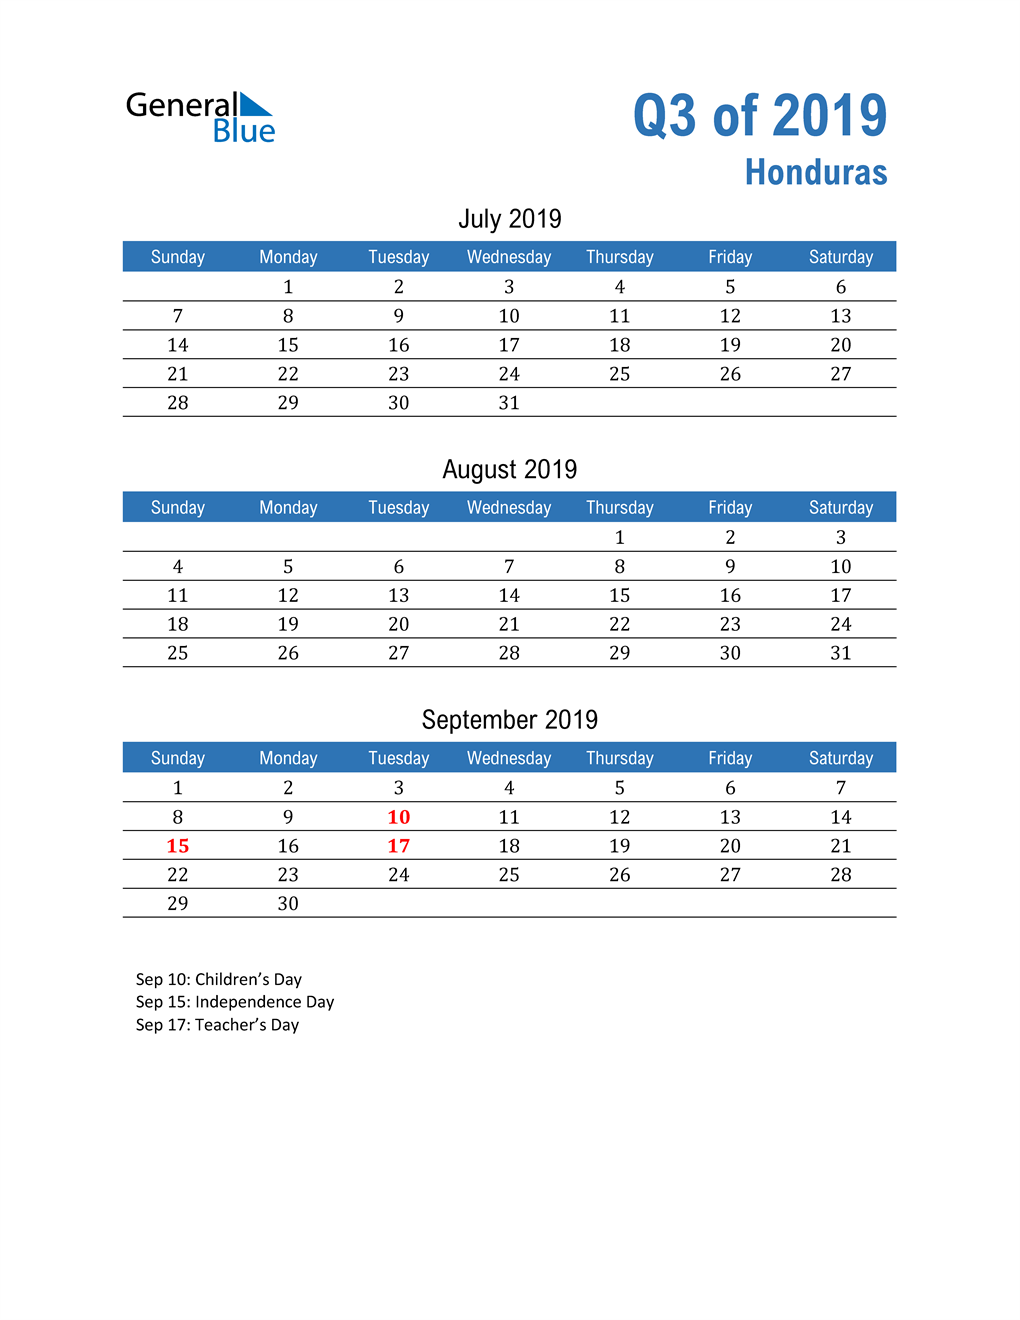  Honduras 2019 Quarterly Calendar 